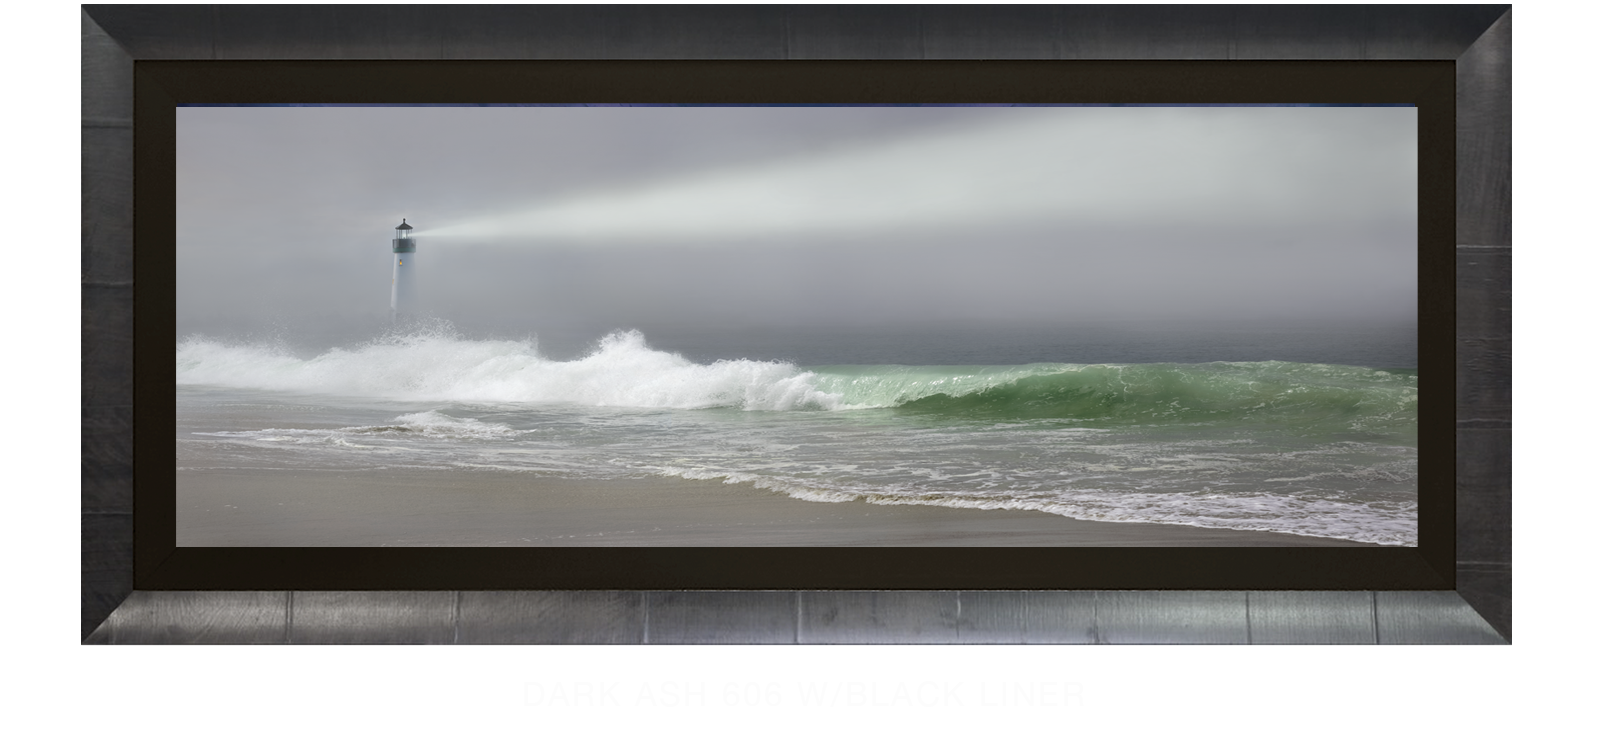 17Lighthouse Dark Ash 606 w_Blk Liner T